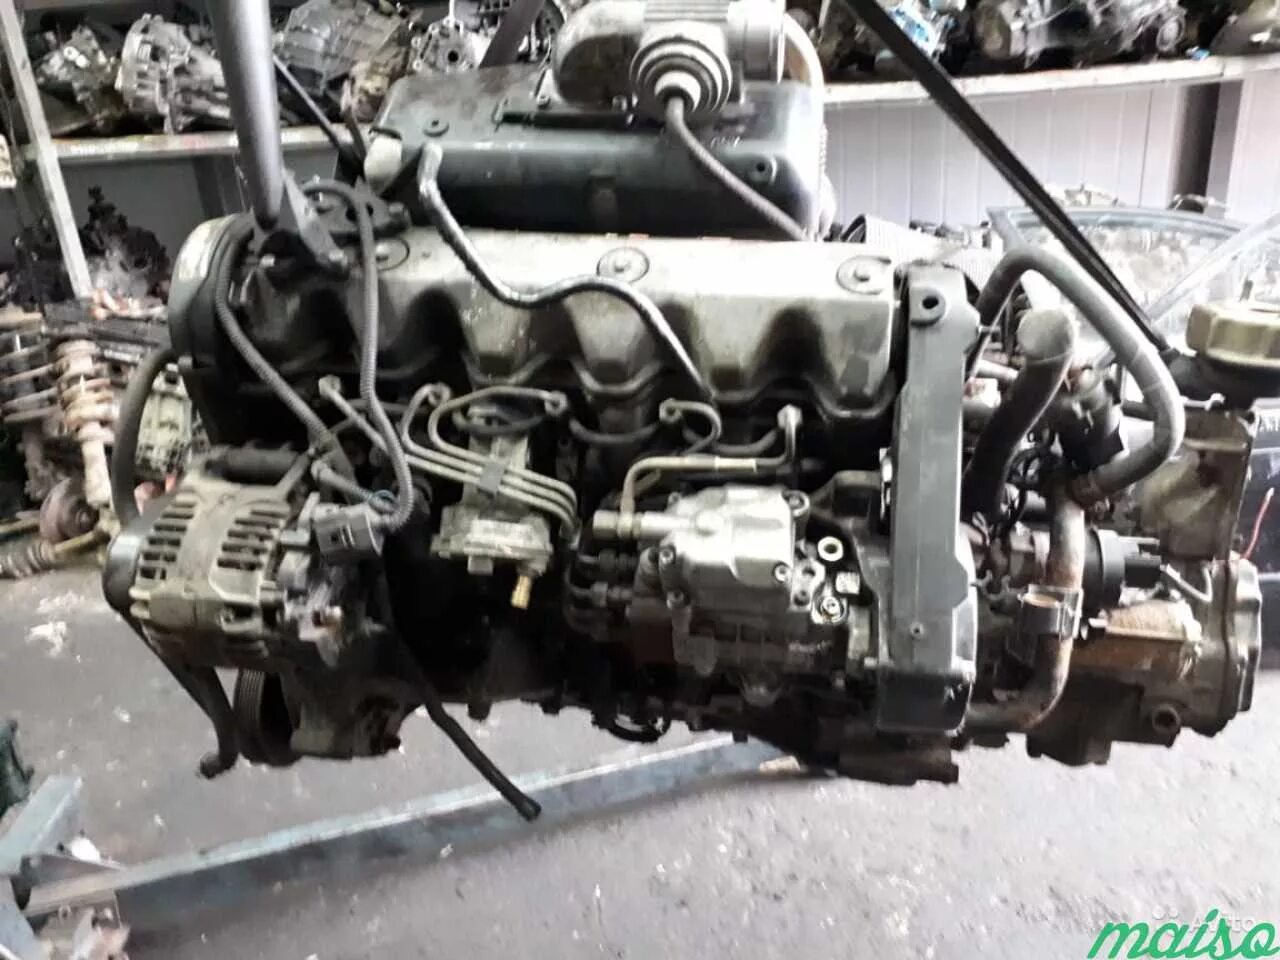 Двигатель AJT 2.5 TDI. ДВС Фольксваген Транспортер 2.5. Фольксваген т4 2.5 тди AJT. Двигатель Фольксваген т4 2.5 дизель. Т5 фольксваген 2.5 тди